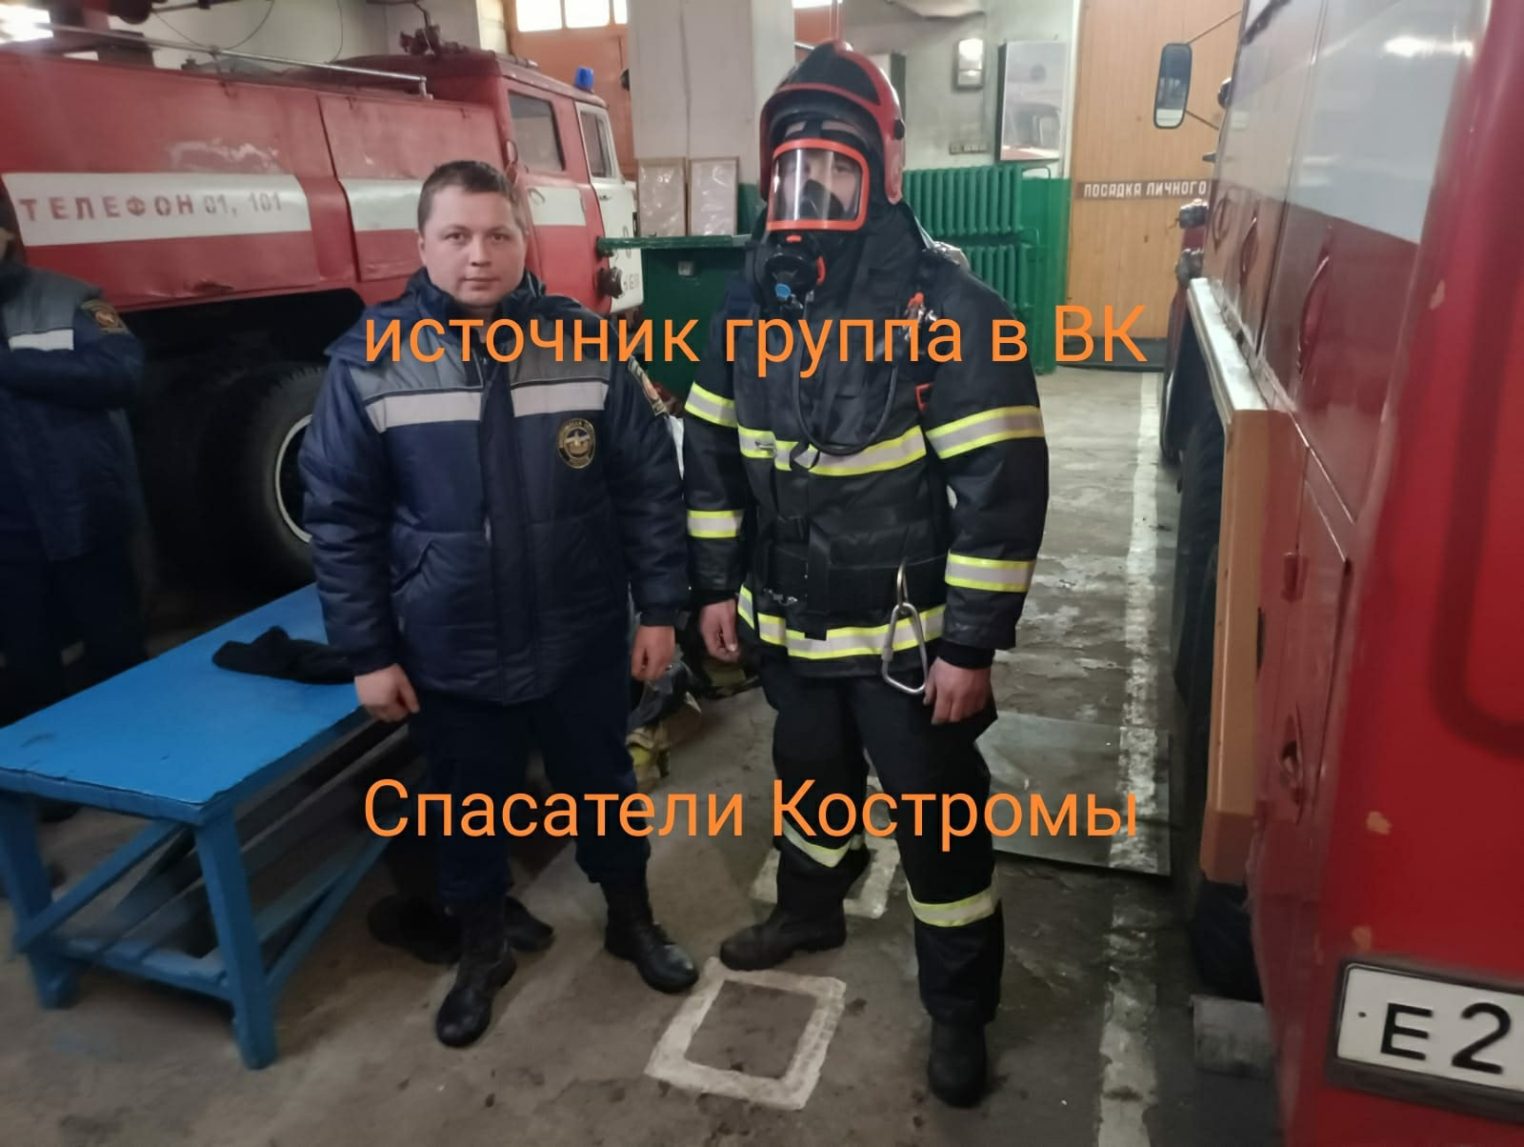 Костромские спасатели получили новое оборудование